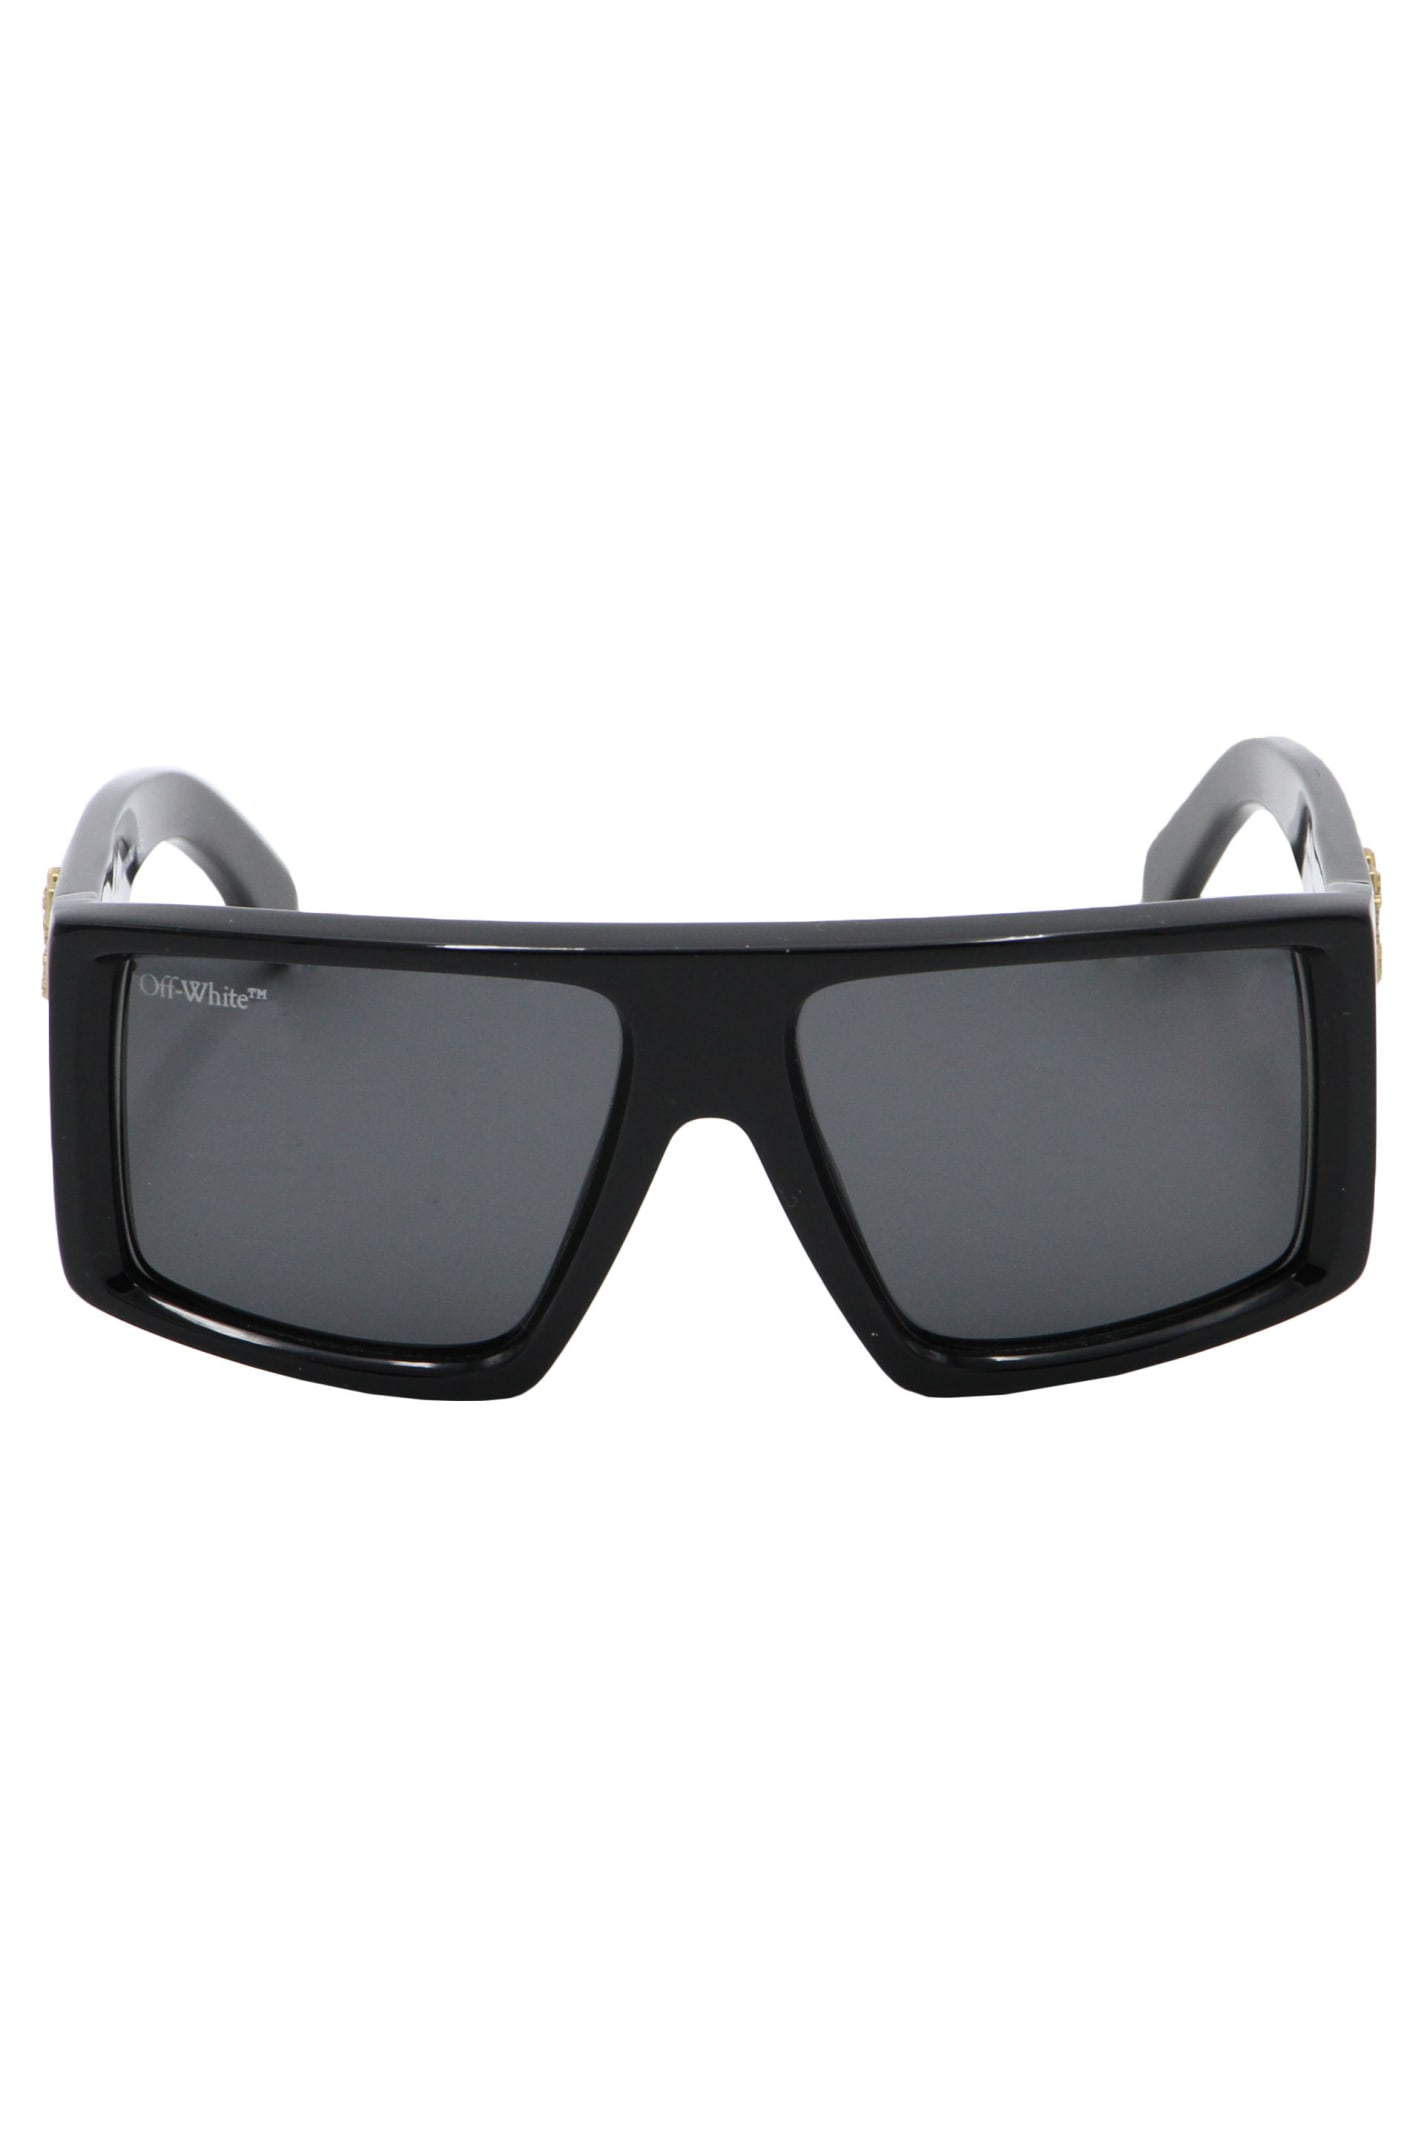 Off-white Squared Sunglasses In Black